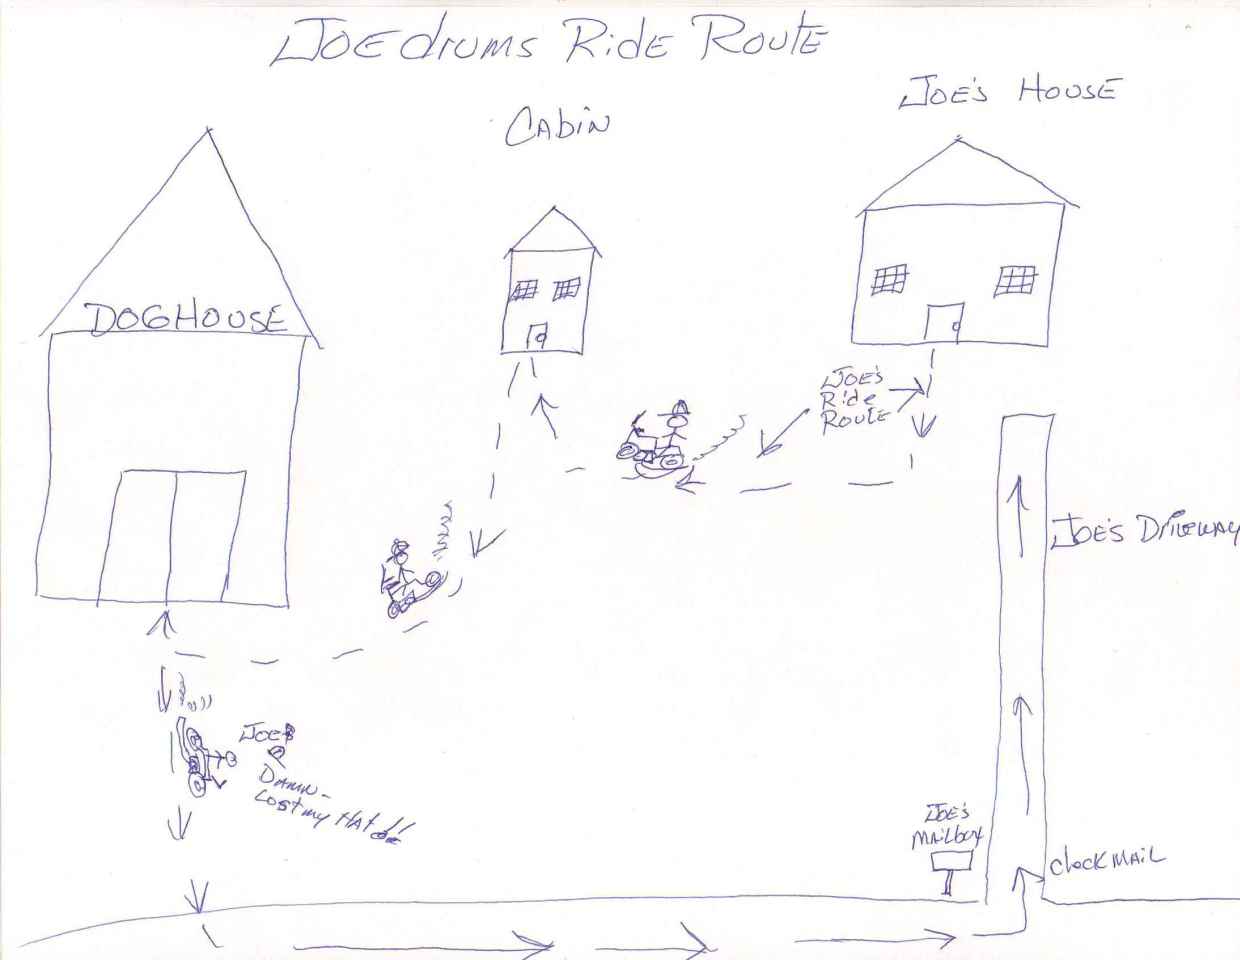 Joedrums Ride Route.jpg